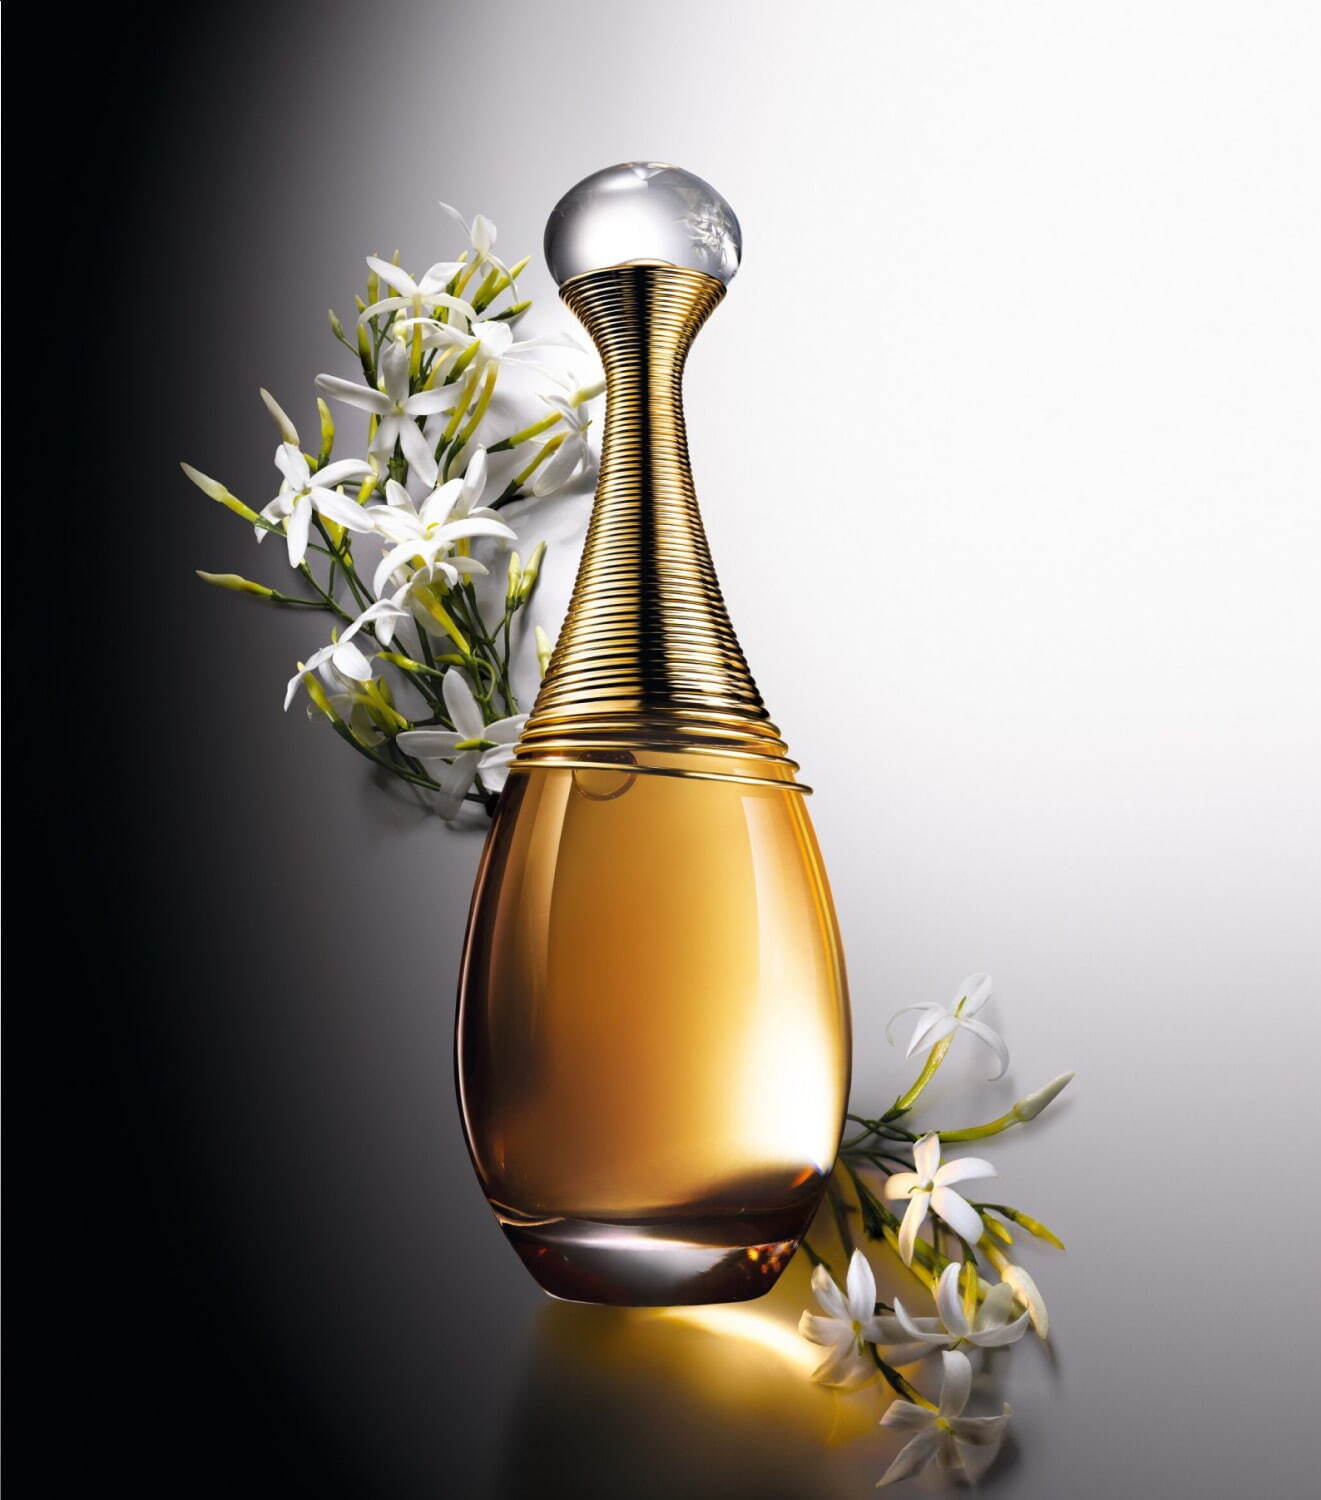 ディオール「ジャドール インフィニッシム」“蜂蜜のように香る”チュベローズ主役の新フレグランス - ファッションプレス